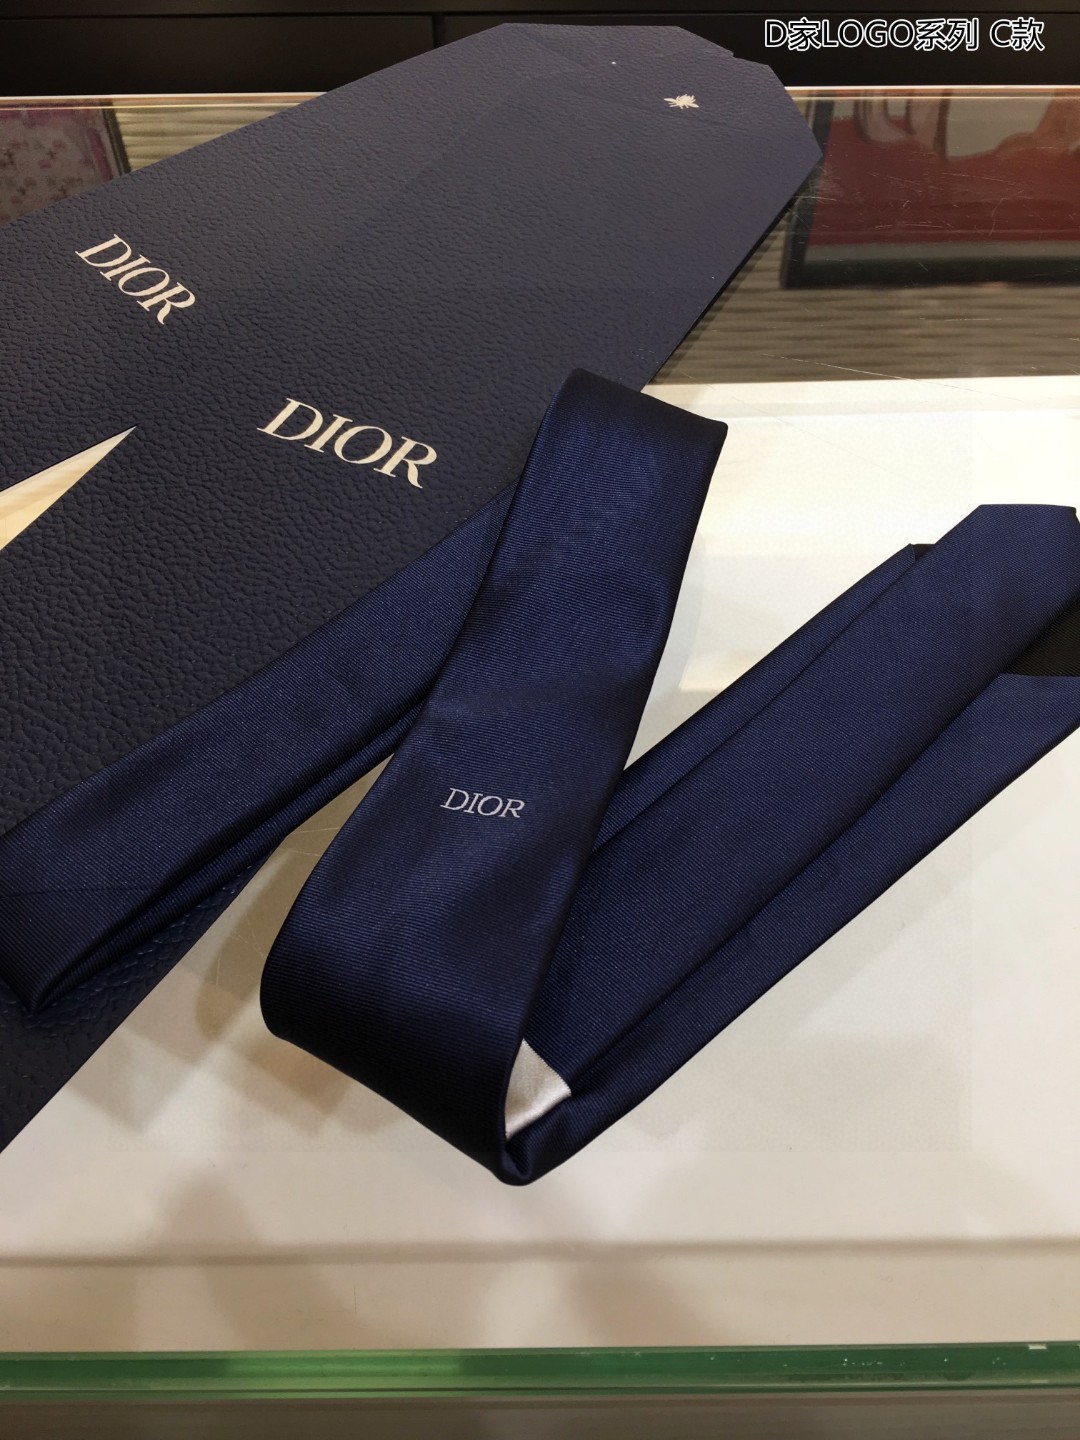 爆款到Do家新款领带配盒子Dior男